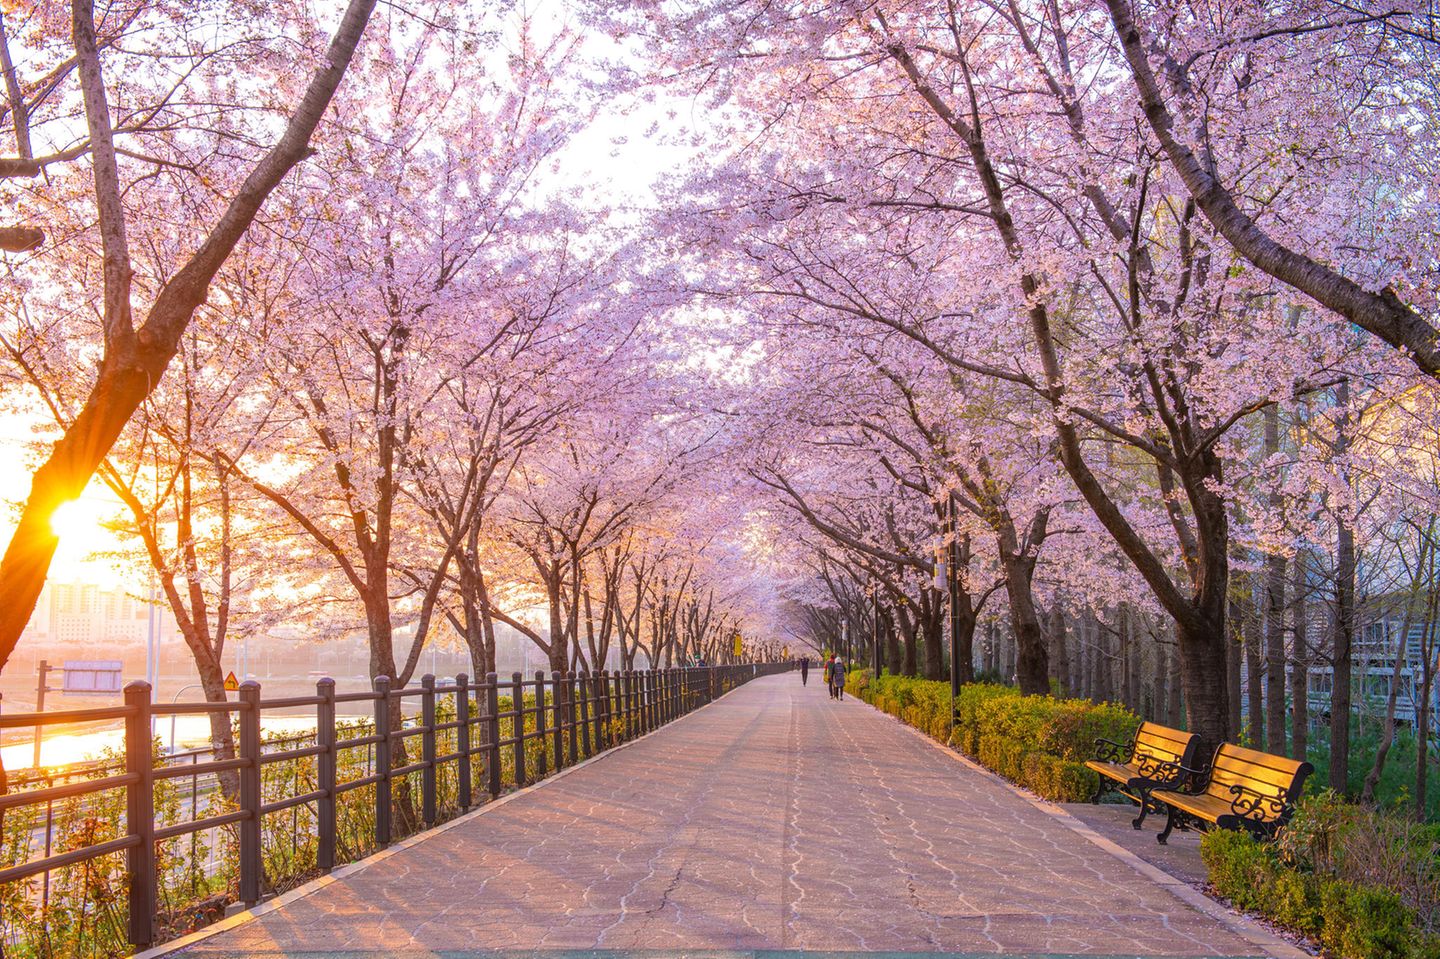 Ein Spazierweg zwischen Kirschbäumen liegt in der Morgensonne